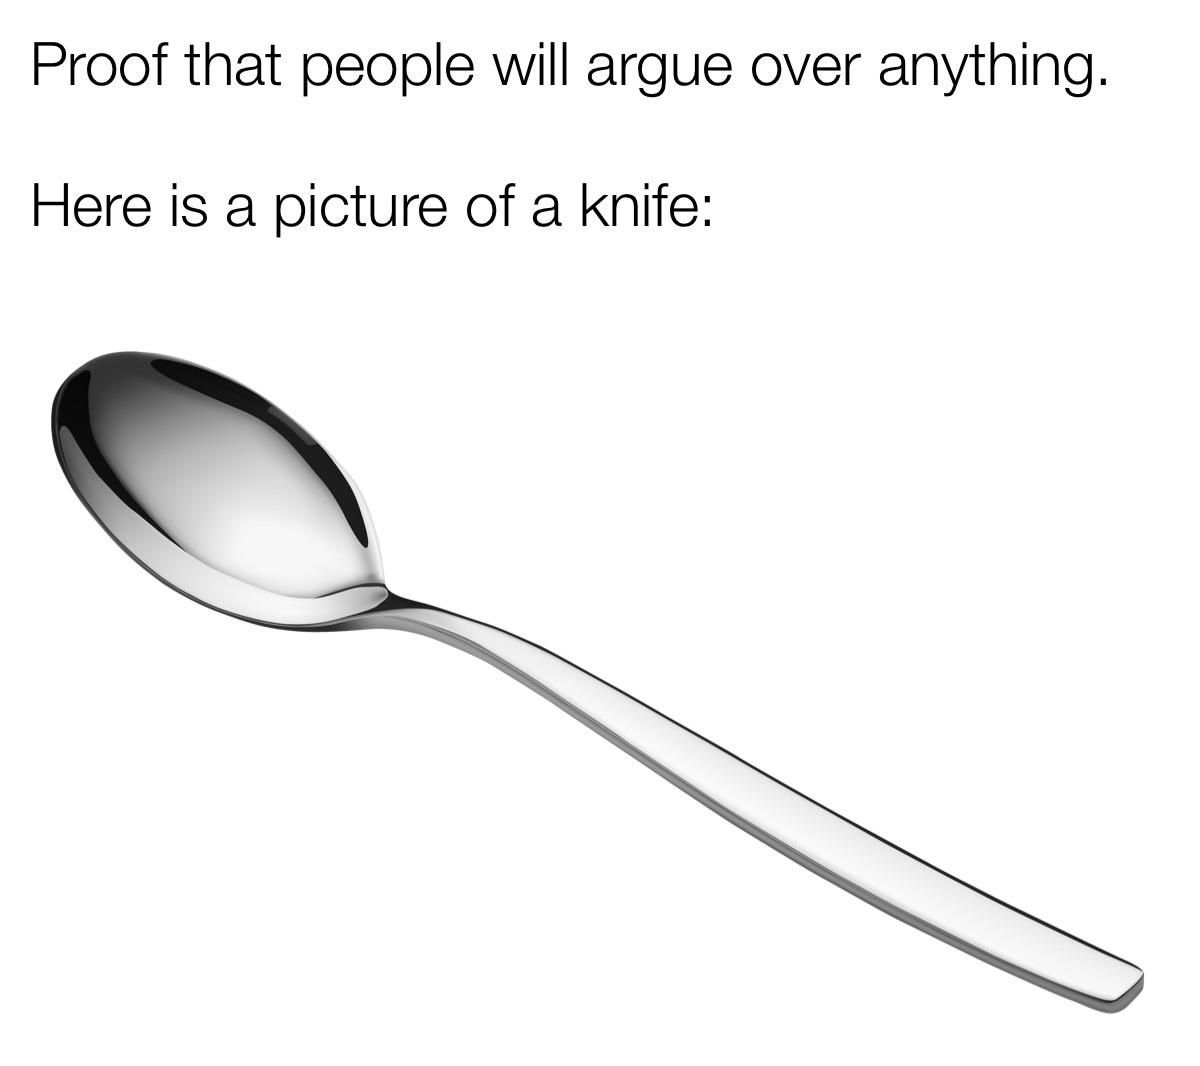 Knifey-spoony